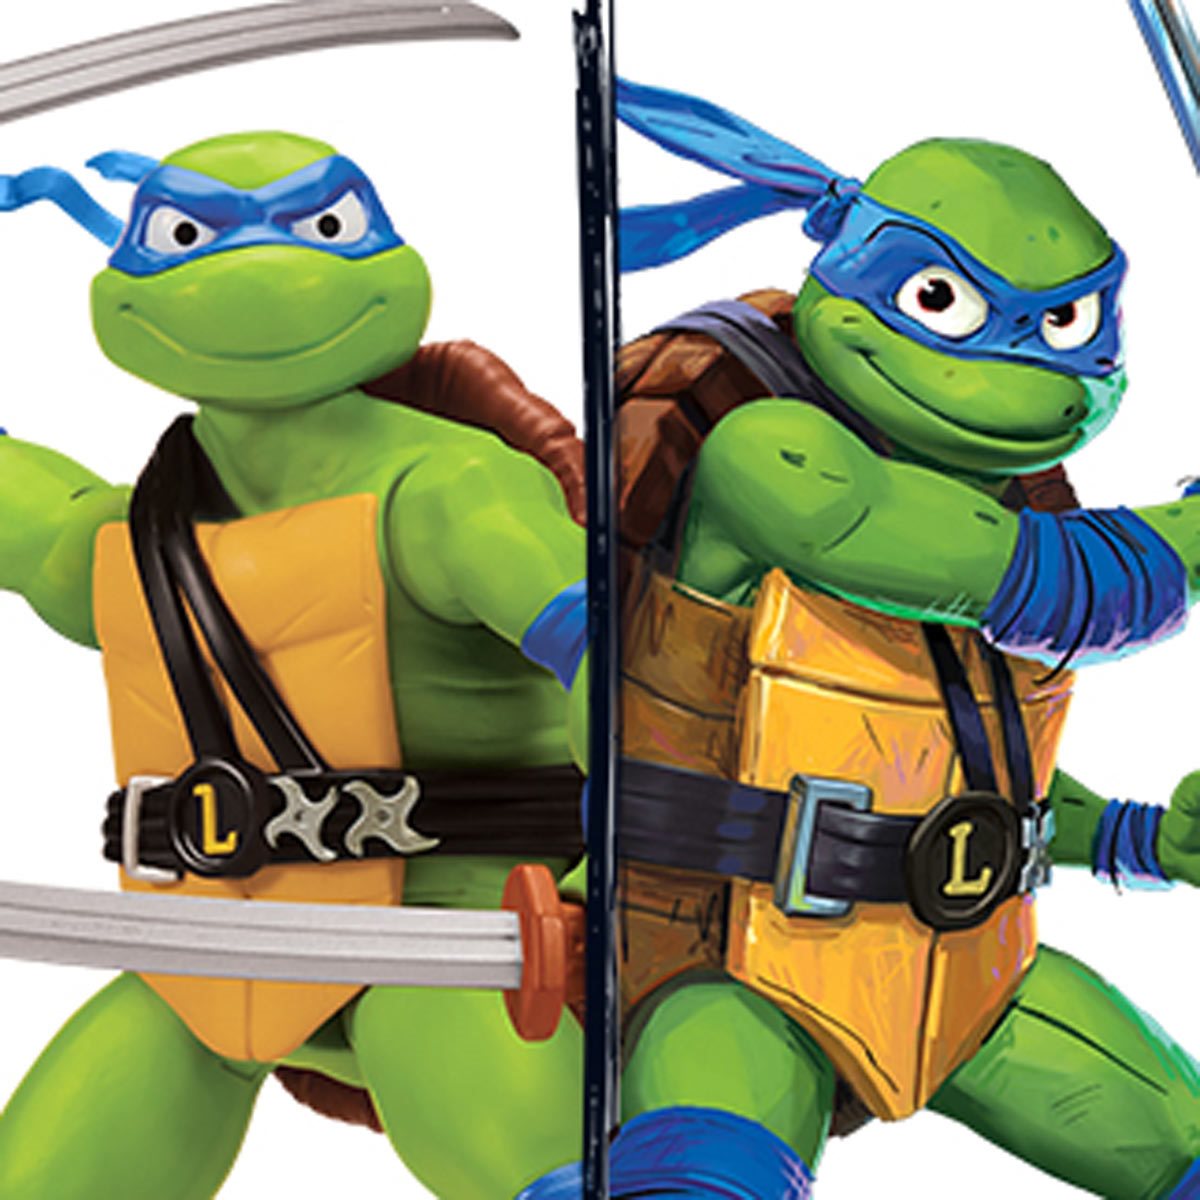 Teenage Mutant Ninja Turtles: Mutant Mayhem Giant Leonardo Action Figure